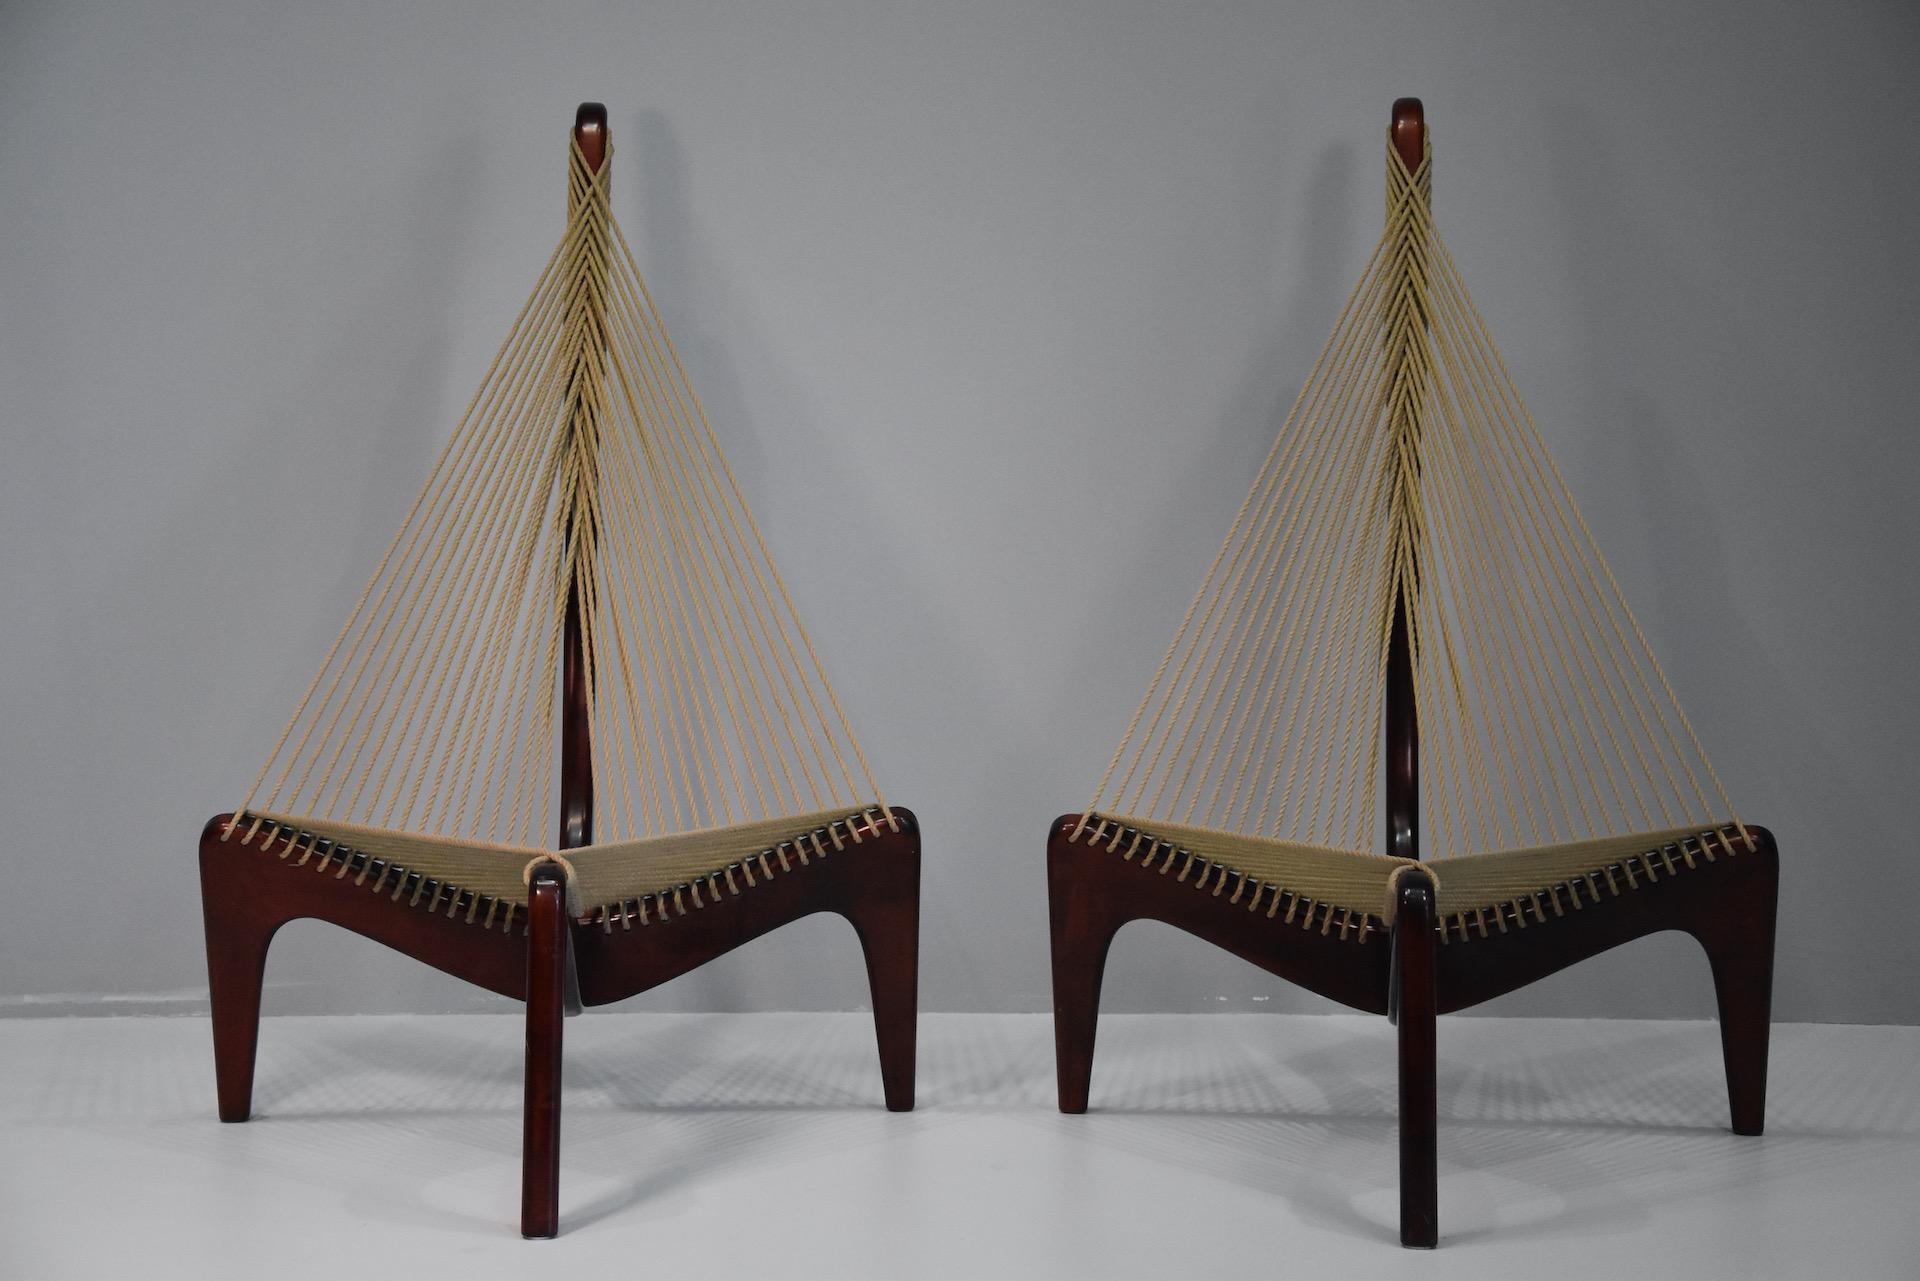 Pair harp chair by Jørgen Høvelskov for Christensen & Larsen Møbelhandværk.